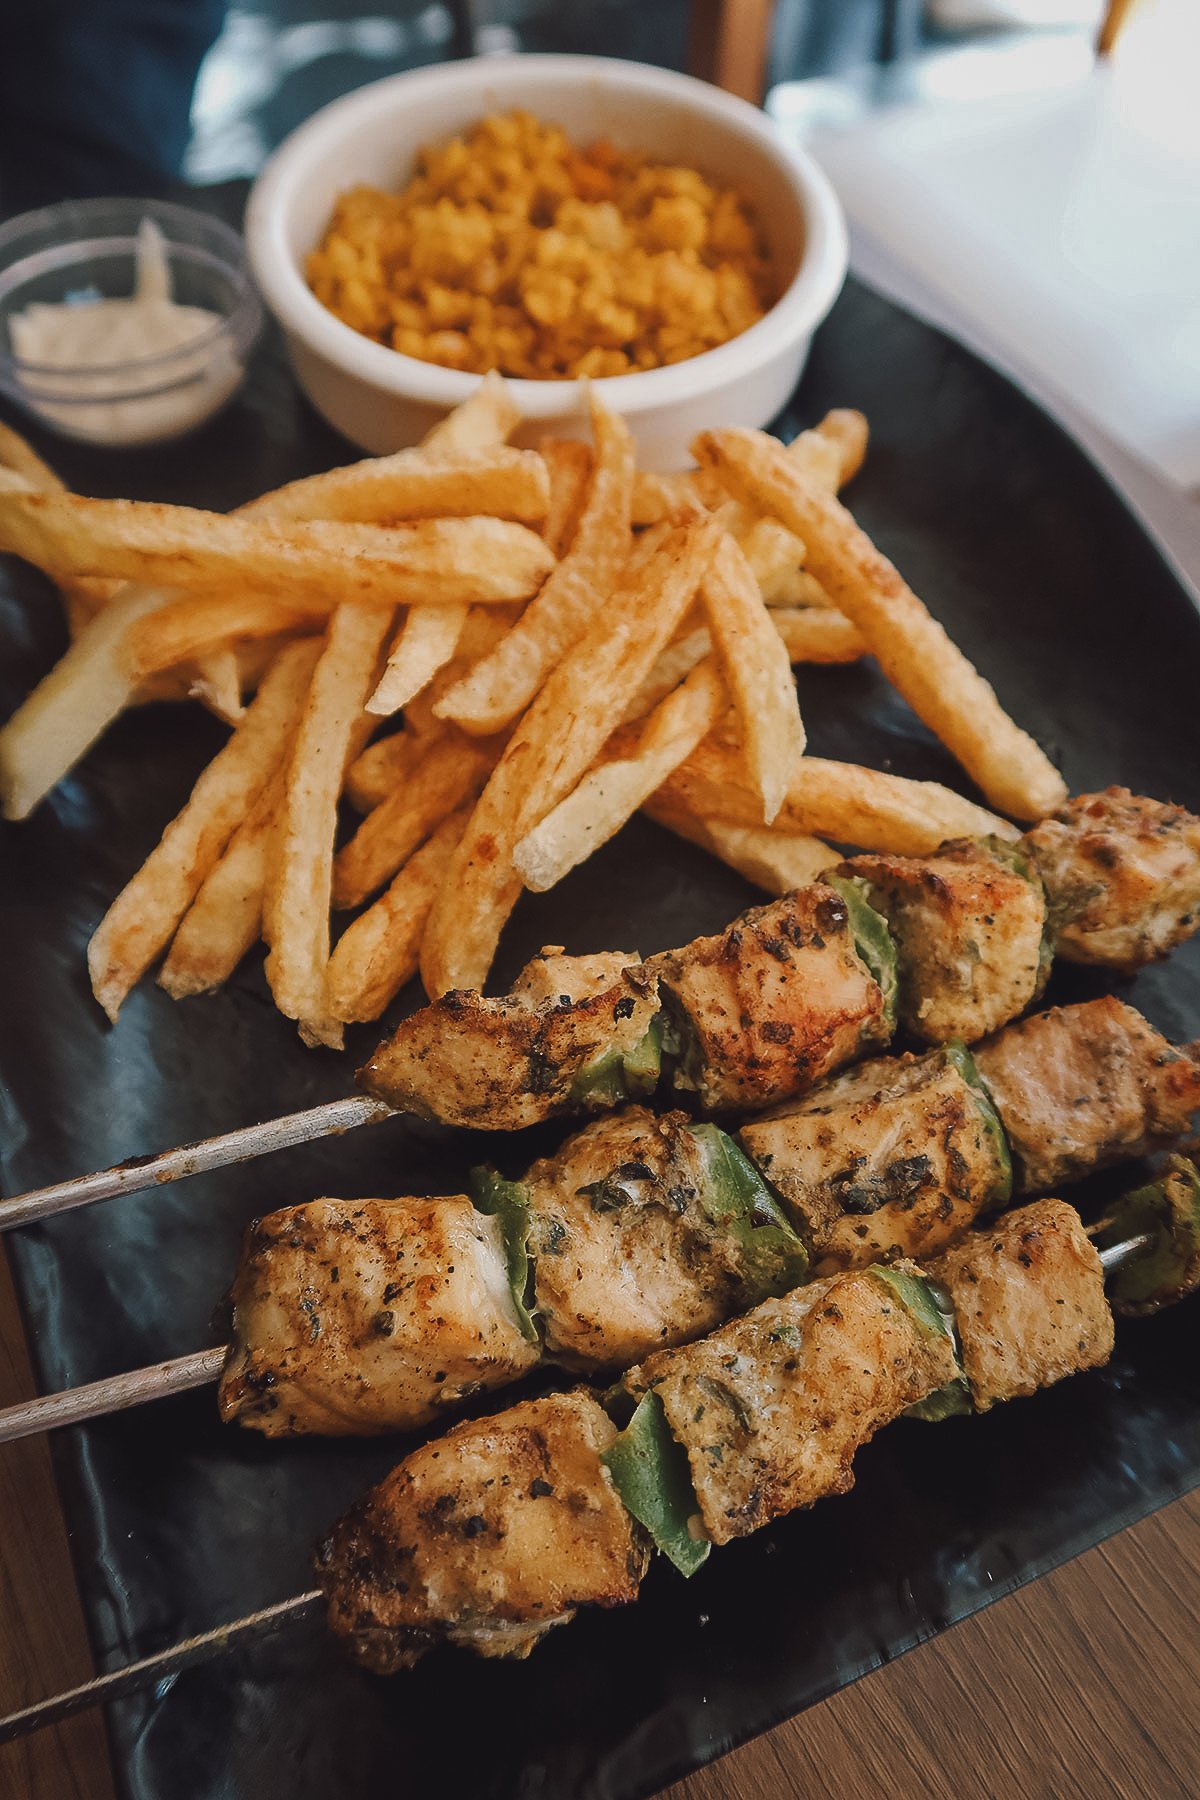 Chicken brochette at a restaurant in Rabat